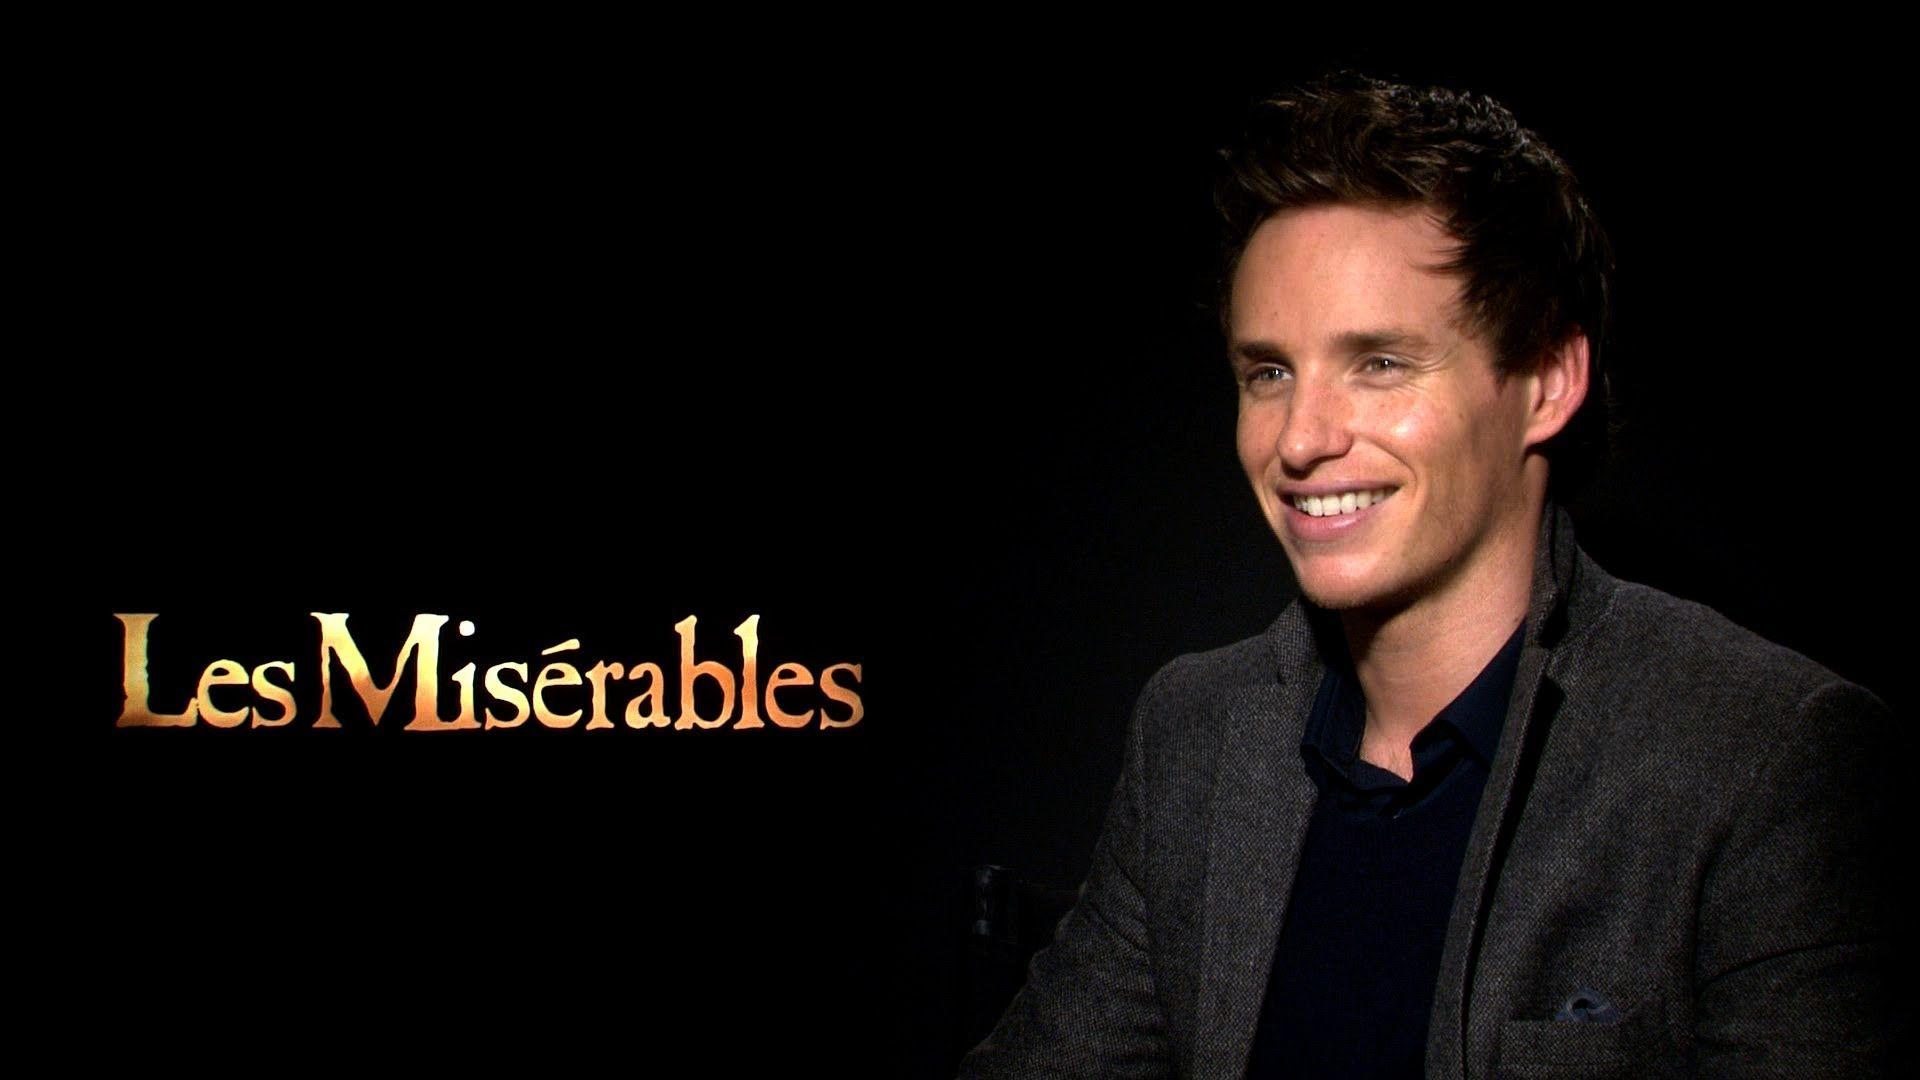 Les Misérables' Eddie Redmayne Interview